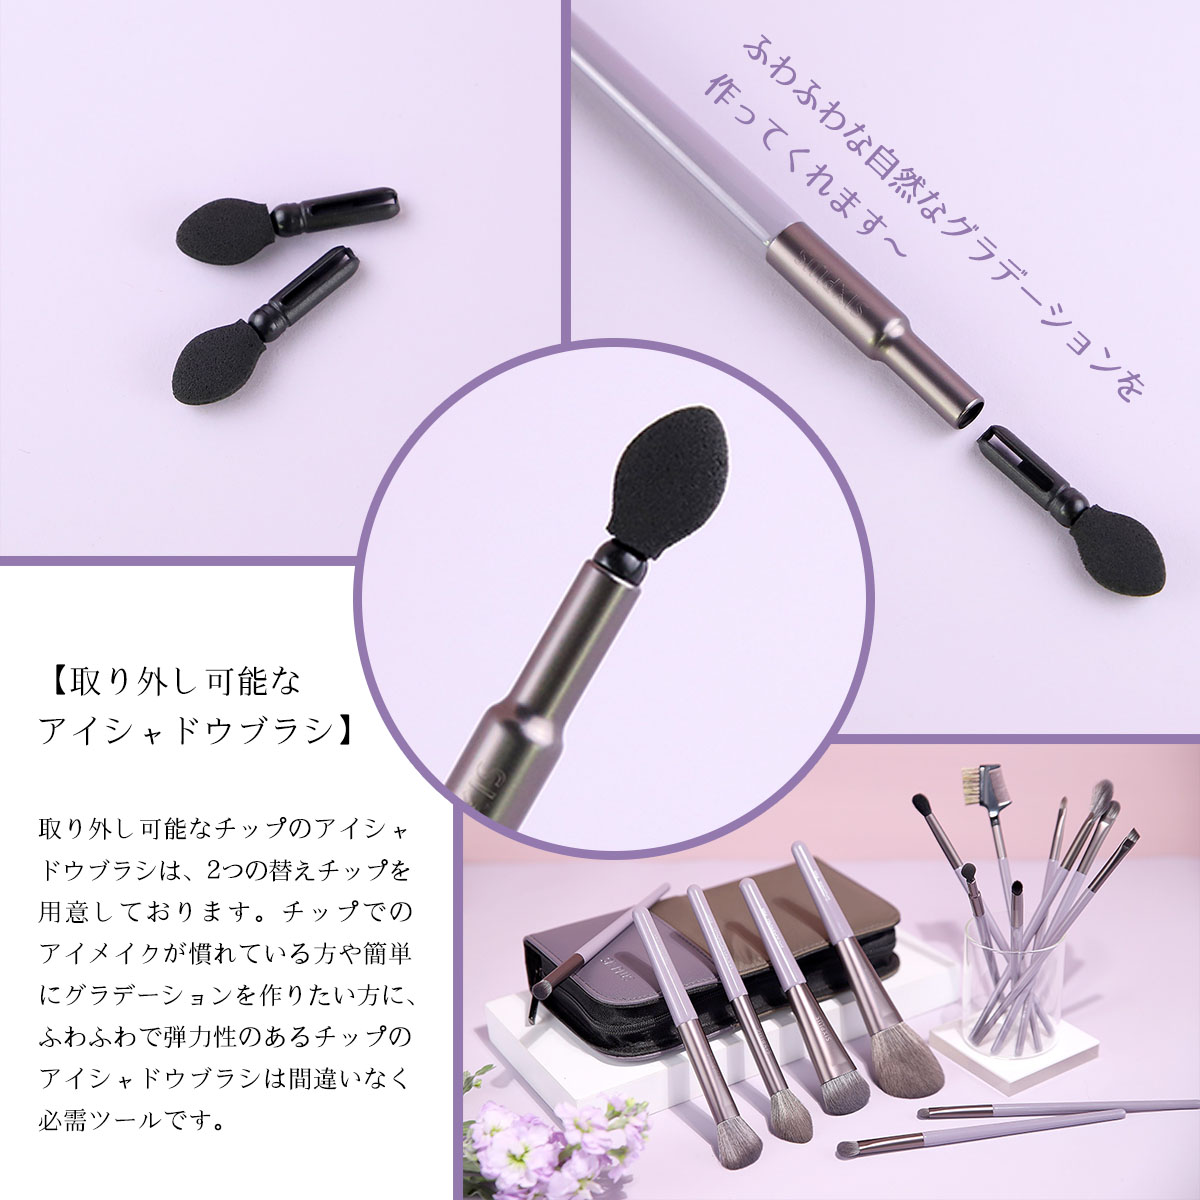 SIXPLUS Cosmetics Japan on X: "昨日ご紹介させていただきました新